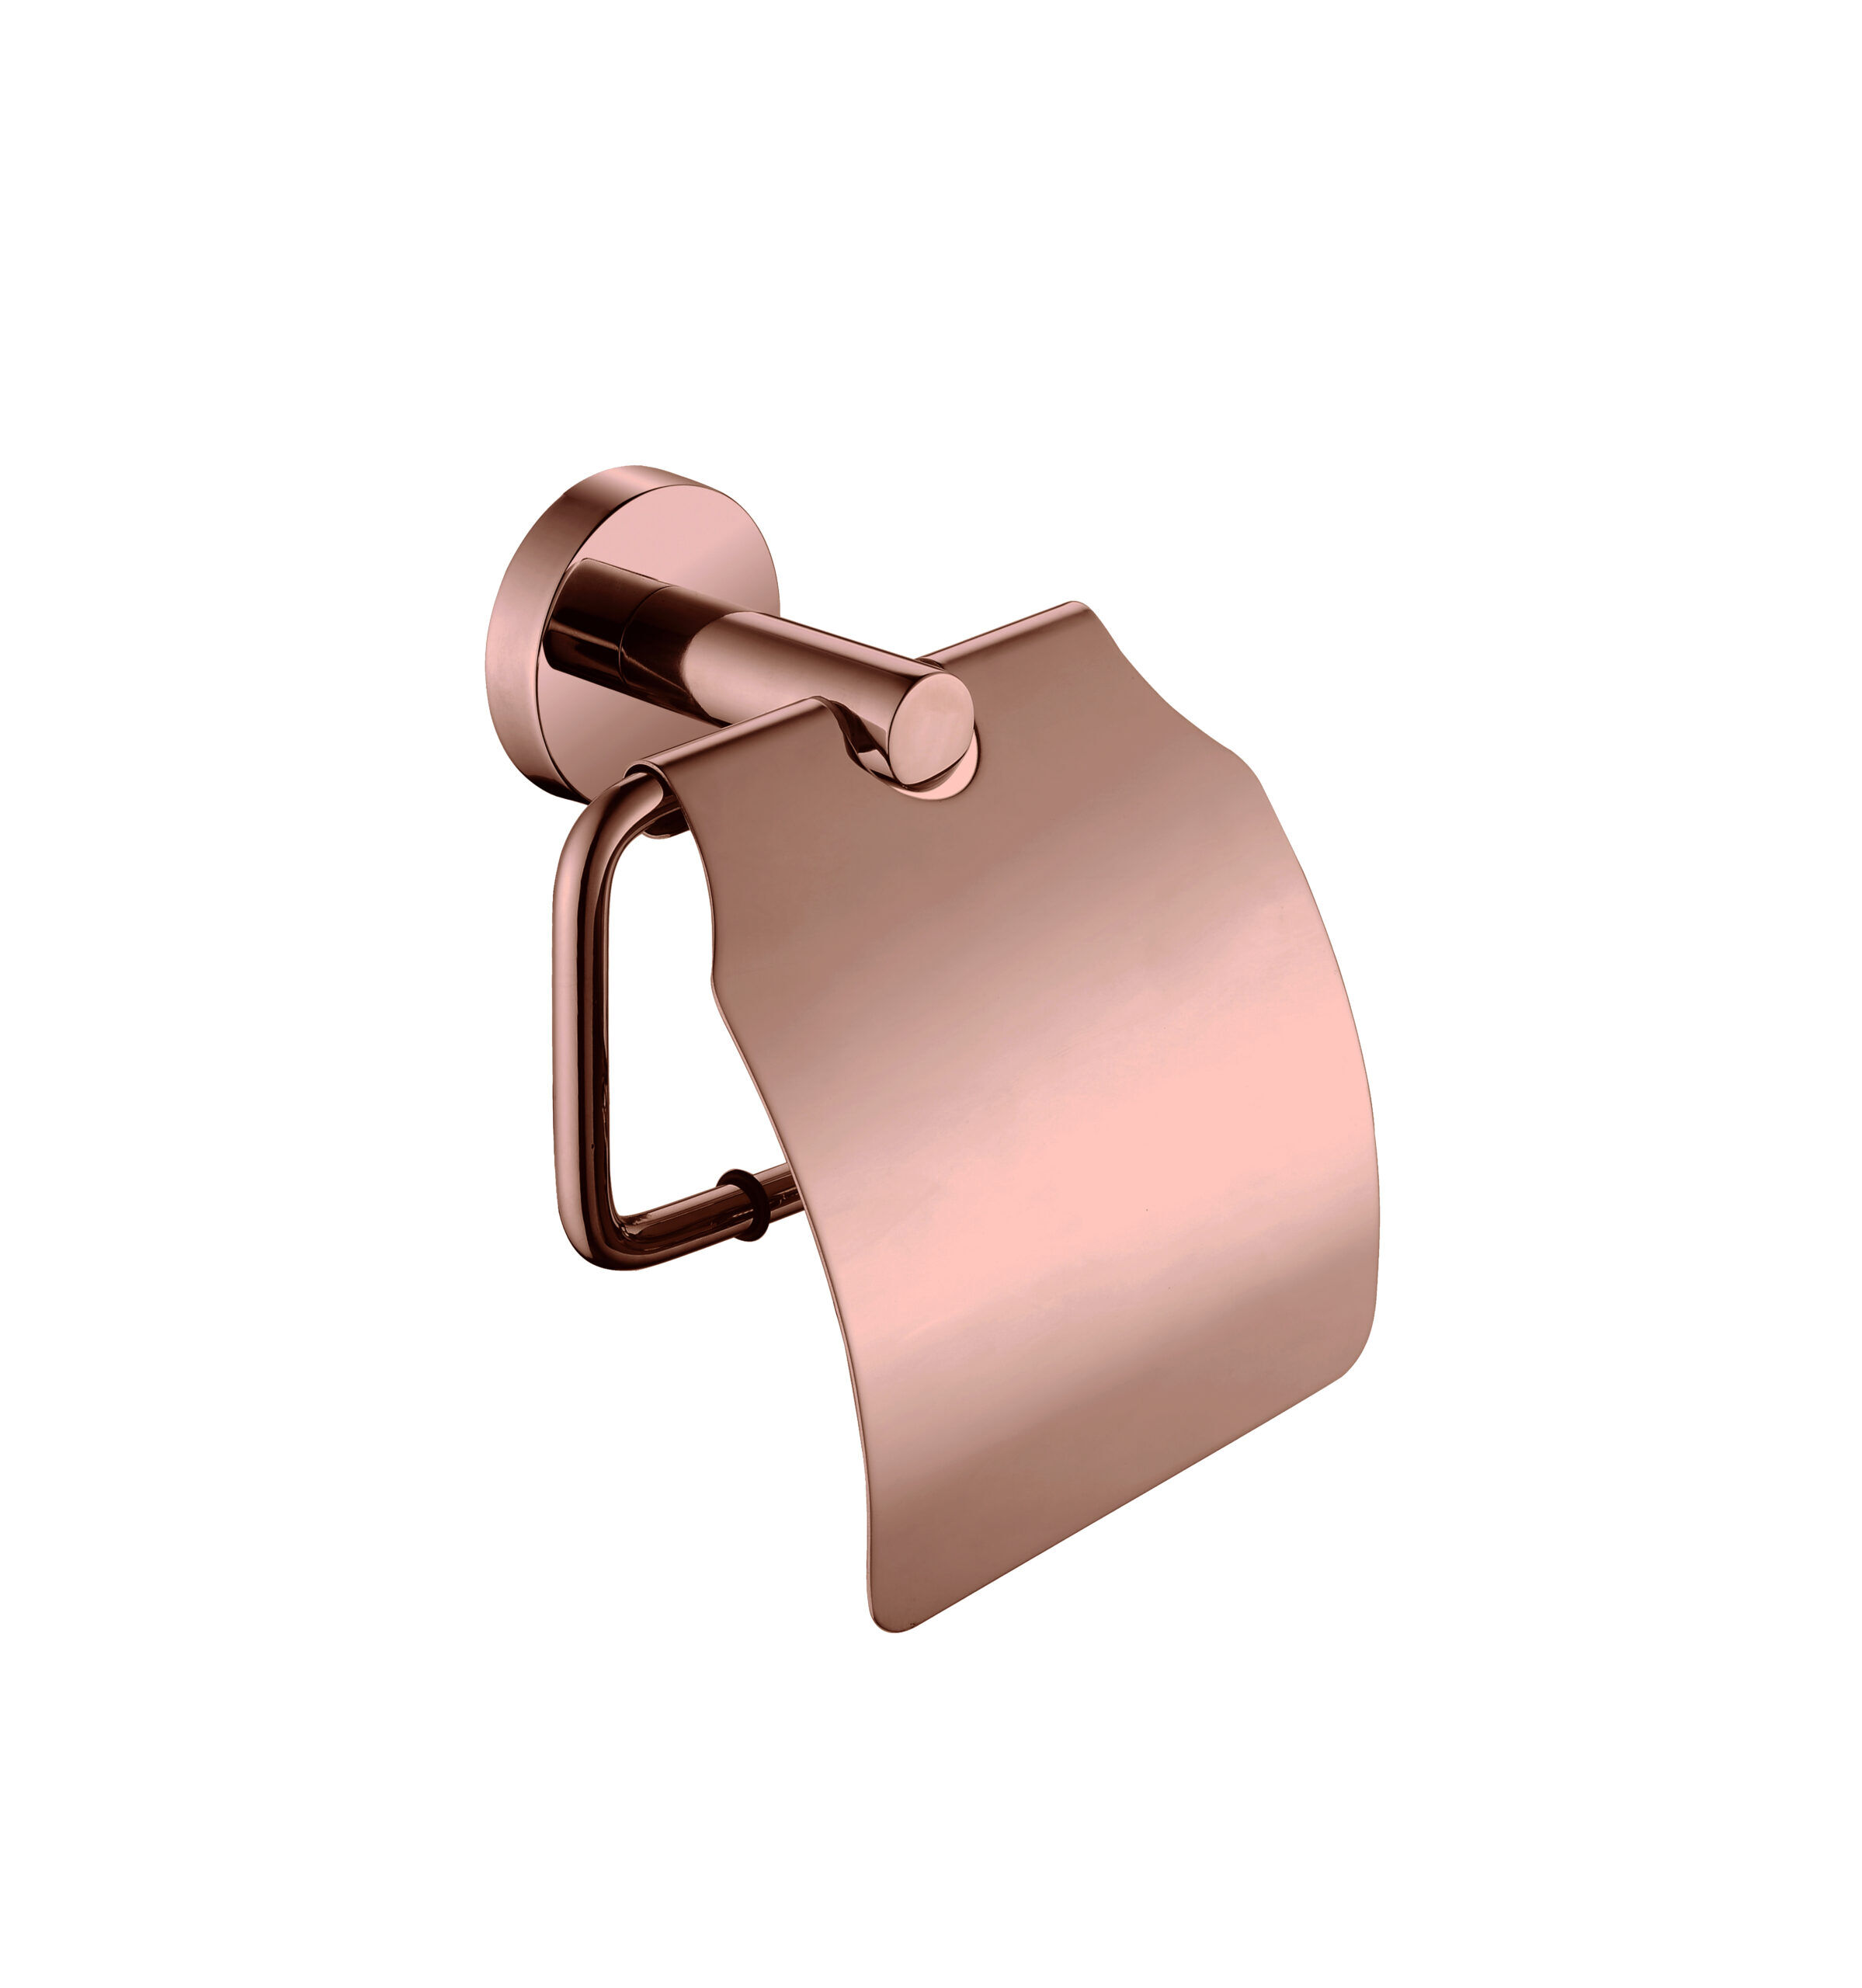 copper Rond met klep - Voordelig Design Sanitair